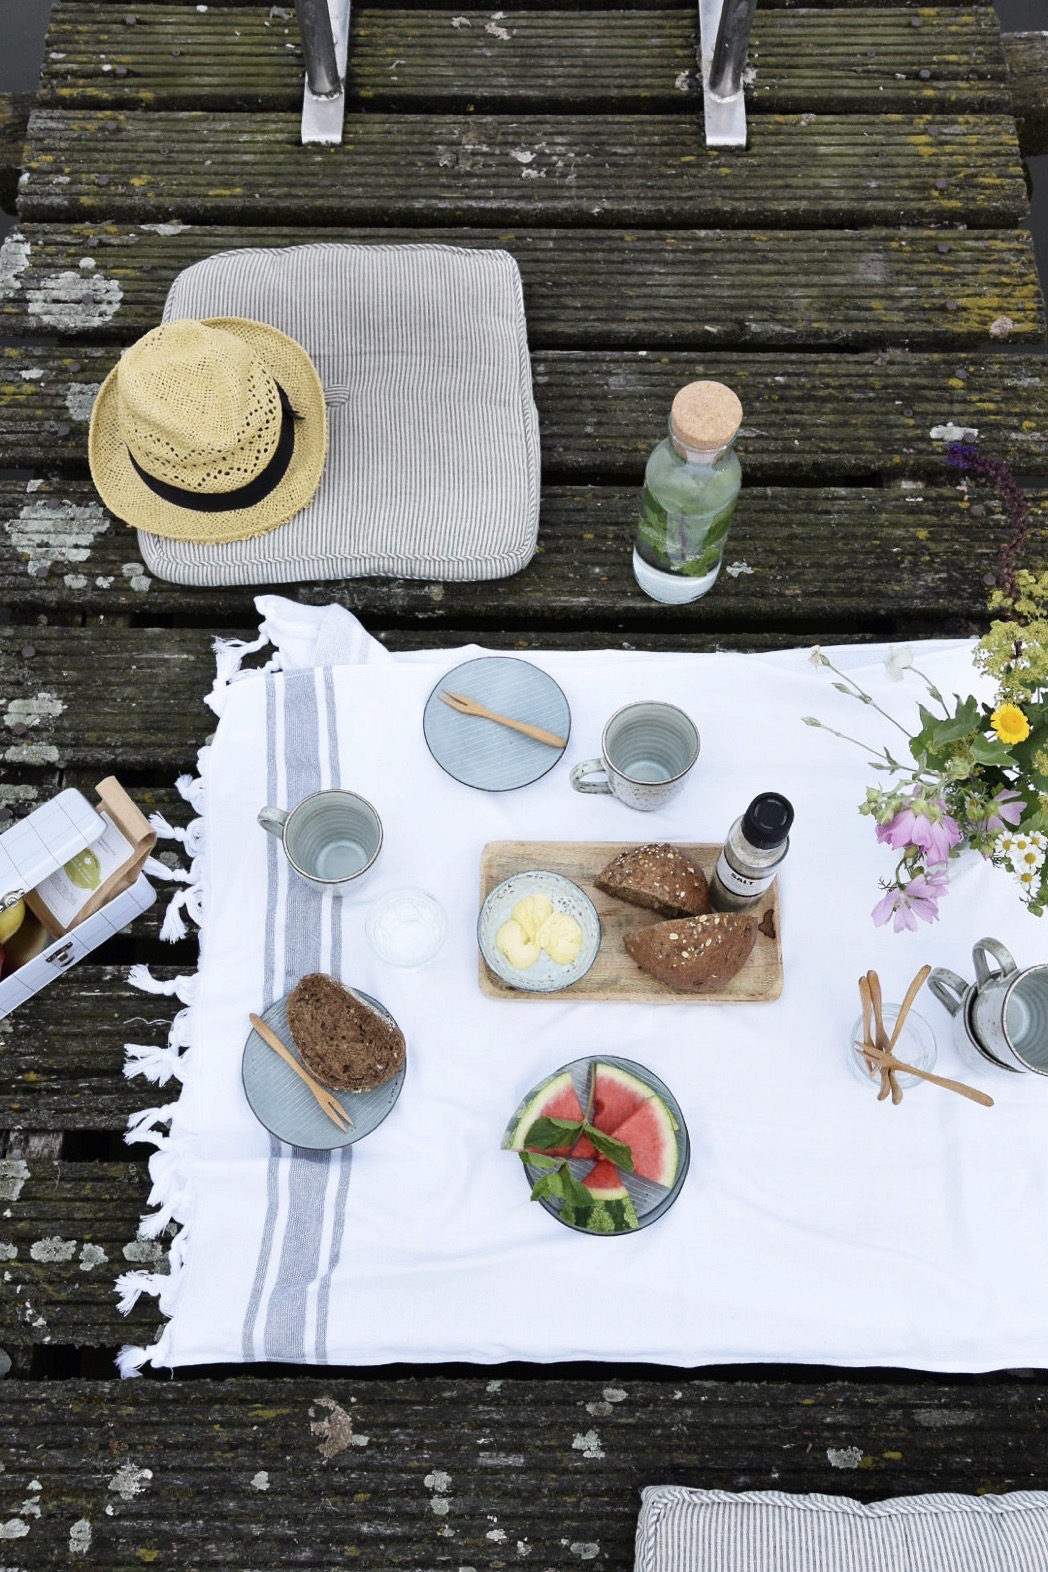 selinesteba.com - Seline Steba styled een zomerse picknick met Leeff producten.jpg